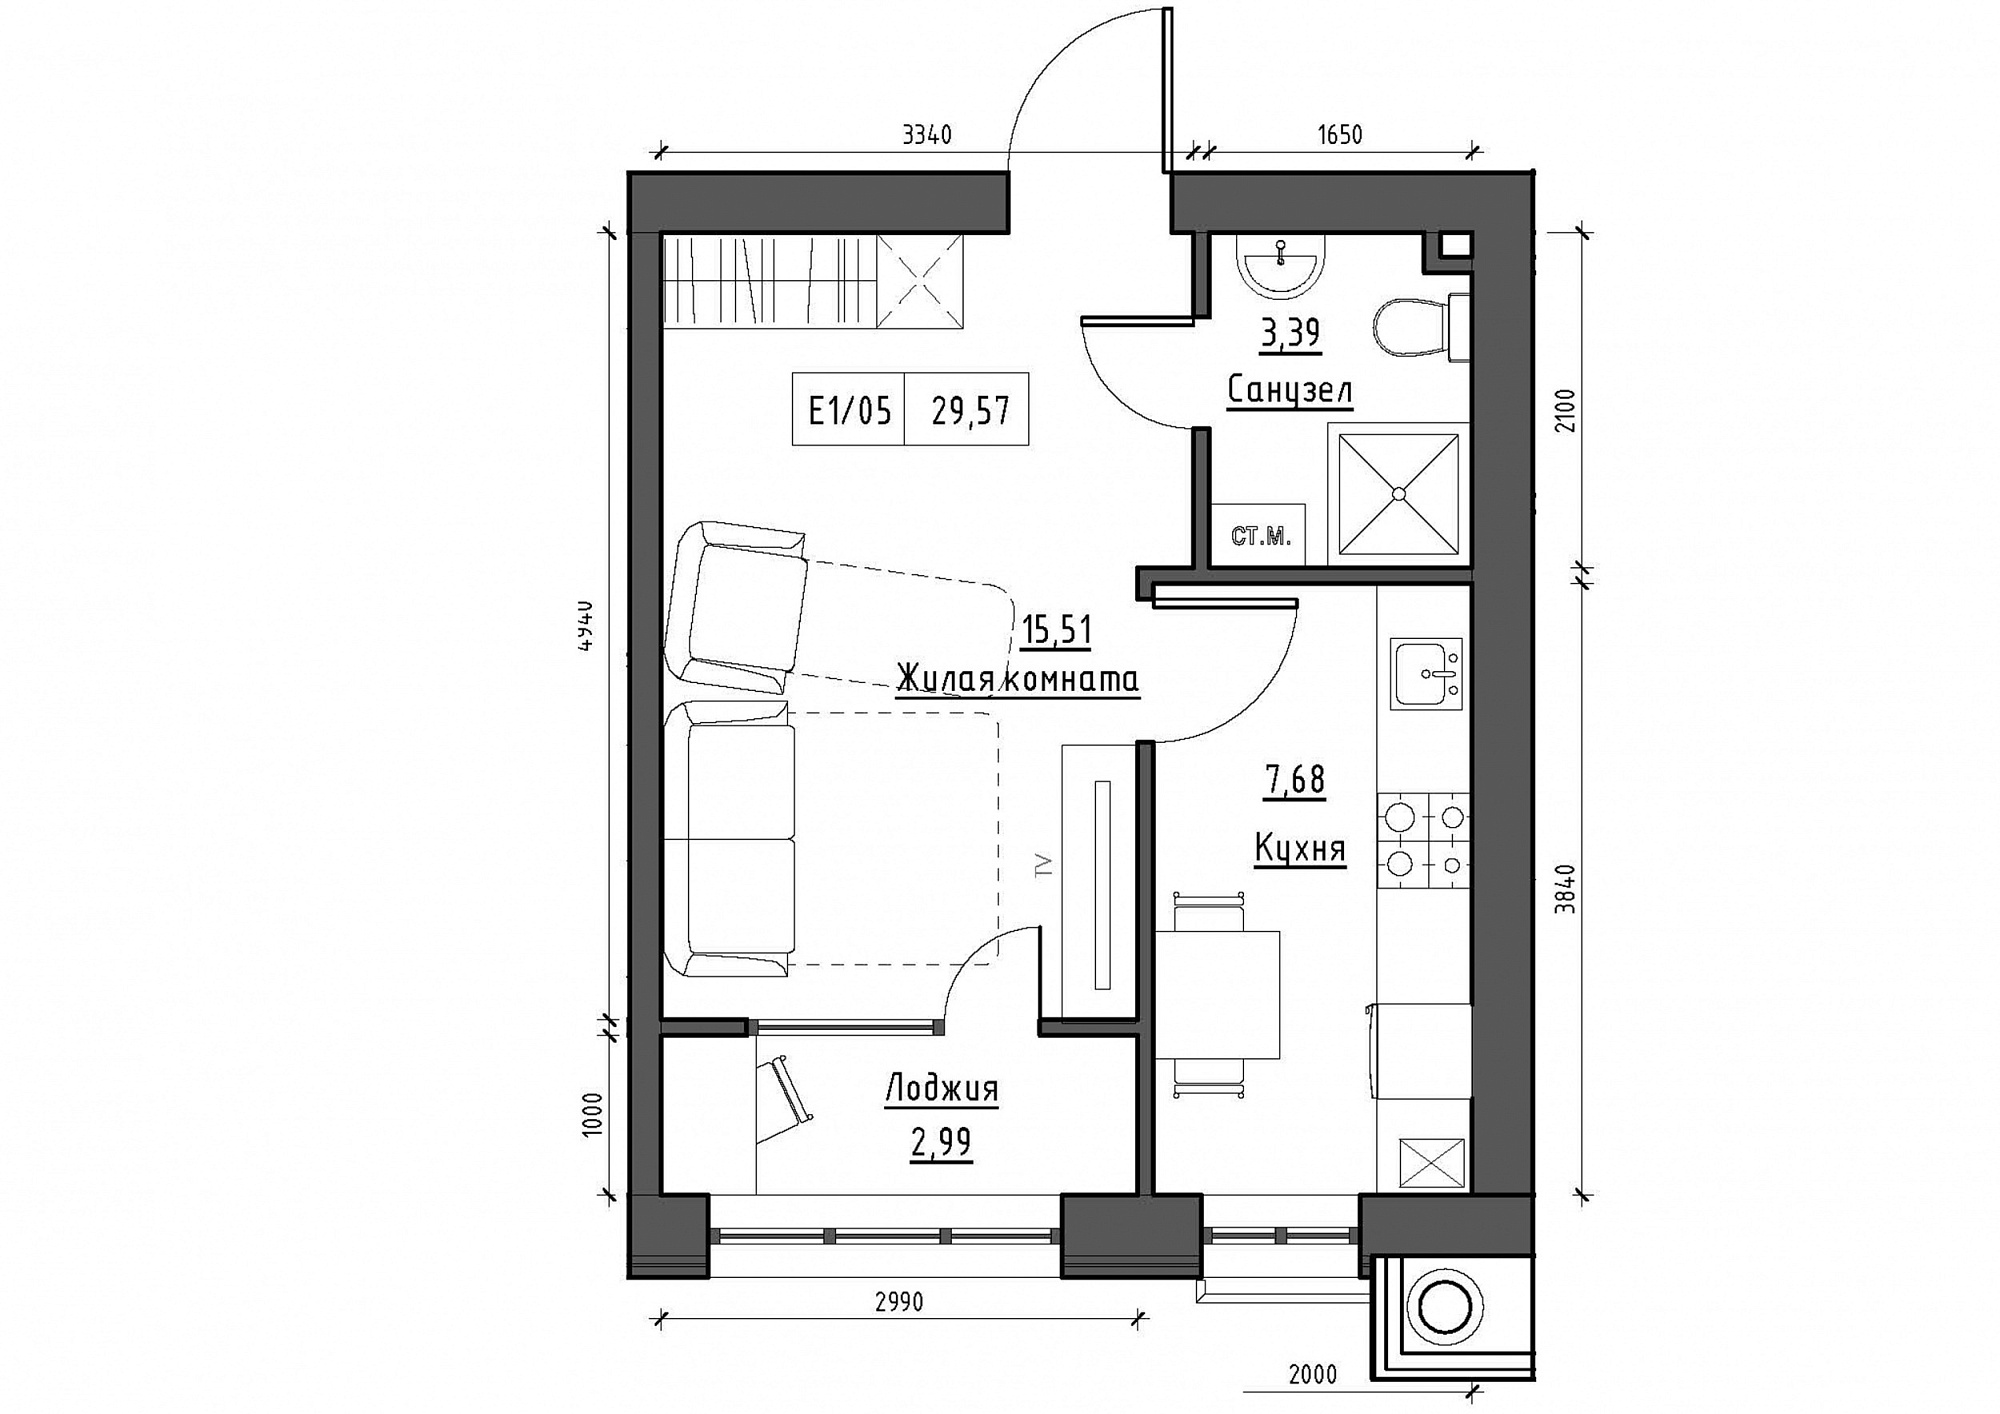 Планування 1-к квартира площею 29.57м2, KS-012-01/0006.